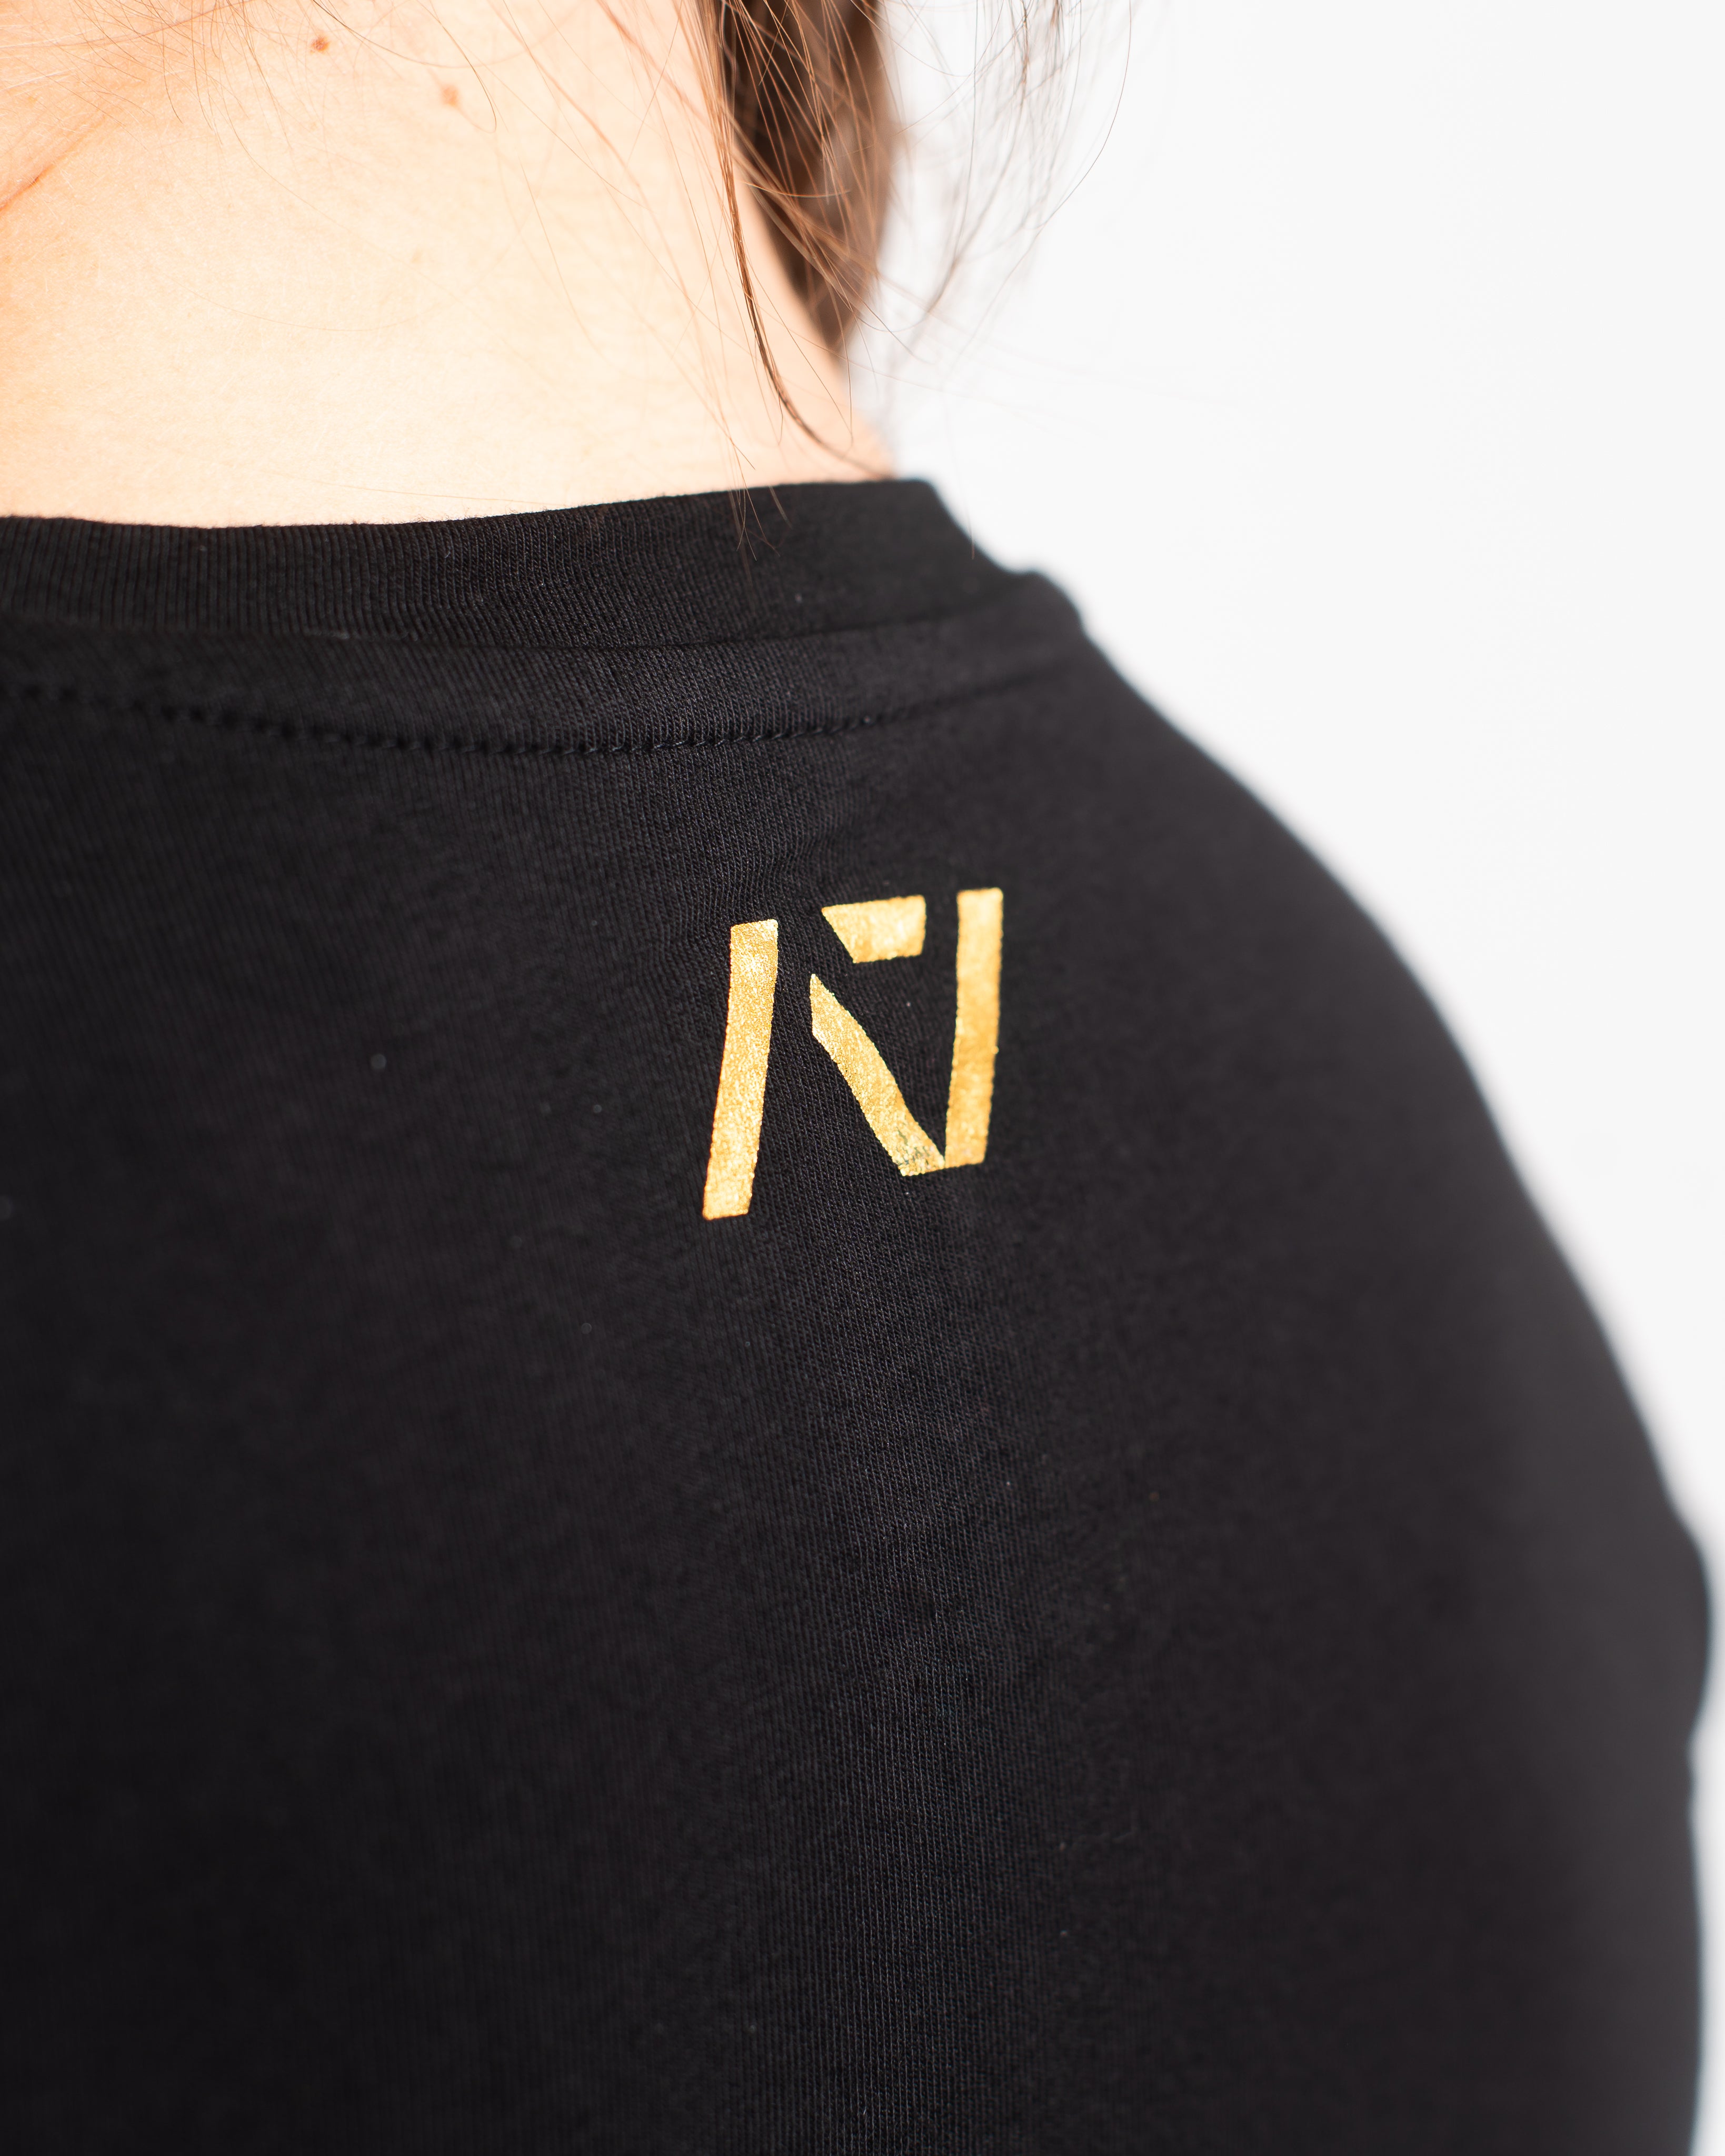 IPF Approved Logo Women's Meet Shirt - Black